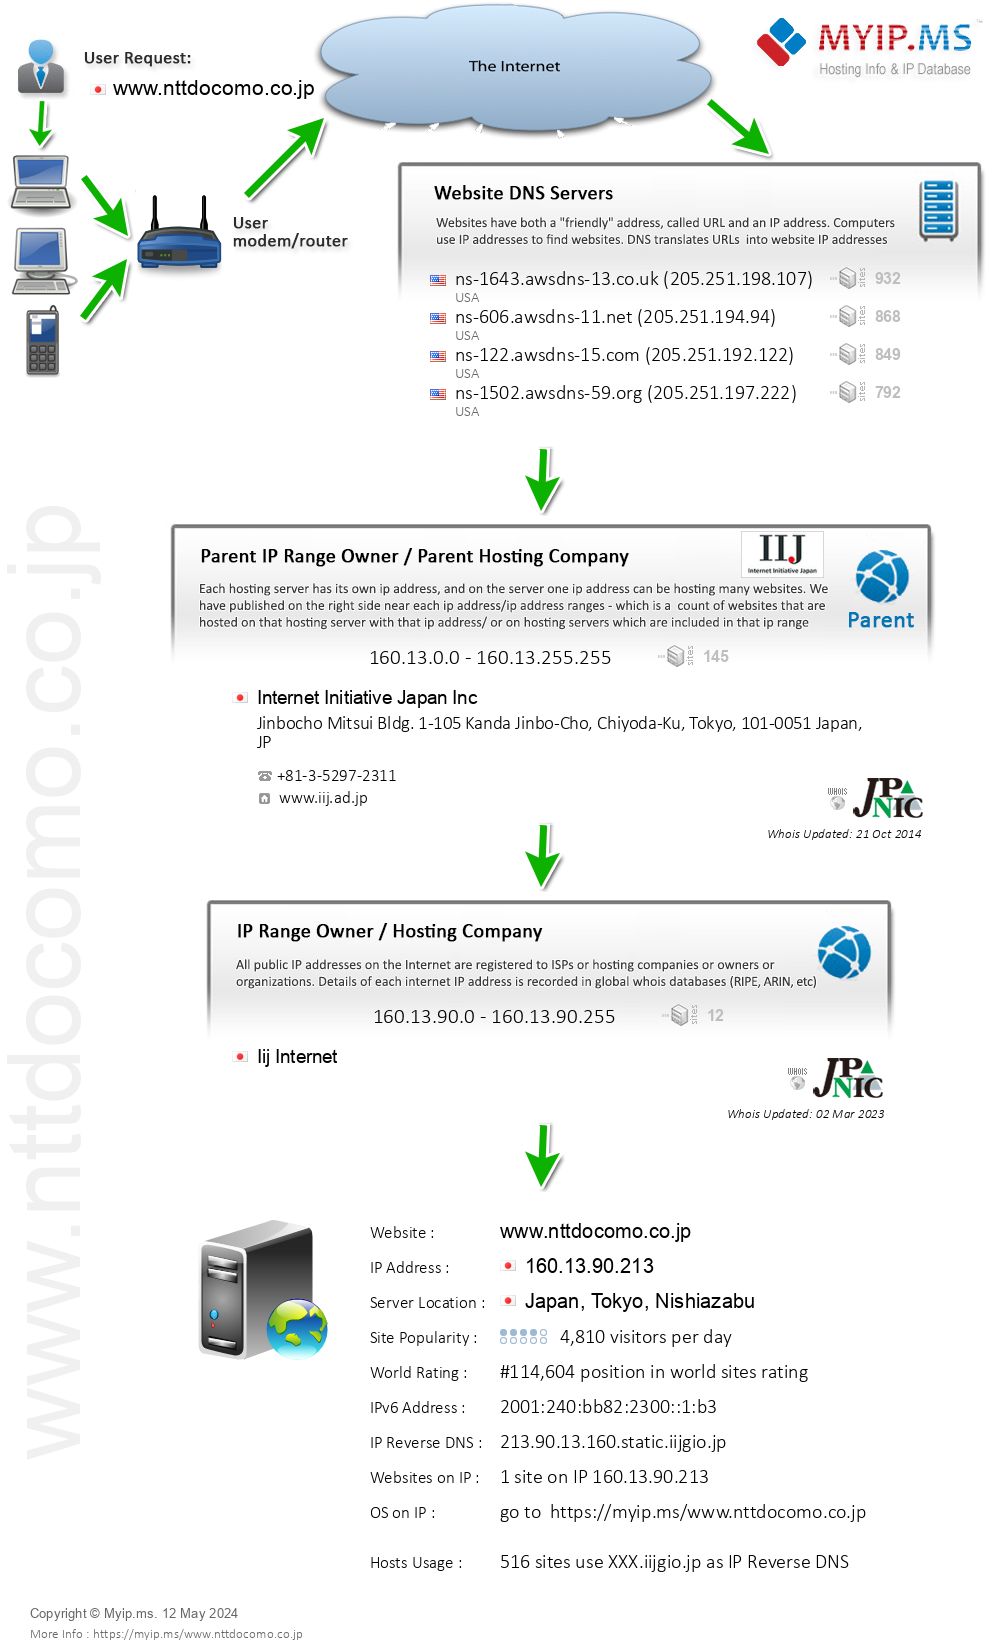 Nttdocomo.co.jp - Website Hosting Visual IP Diagram